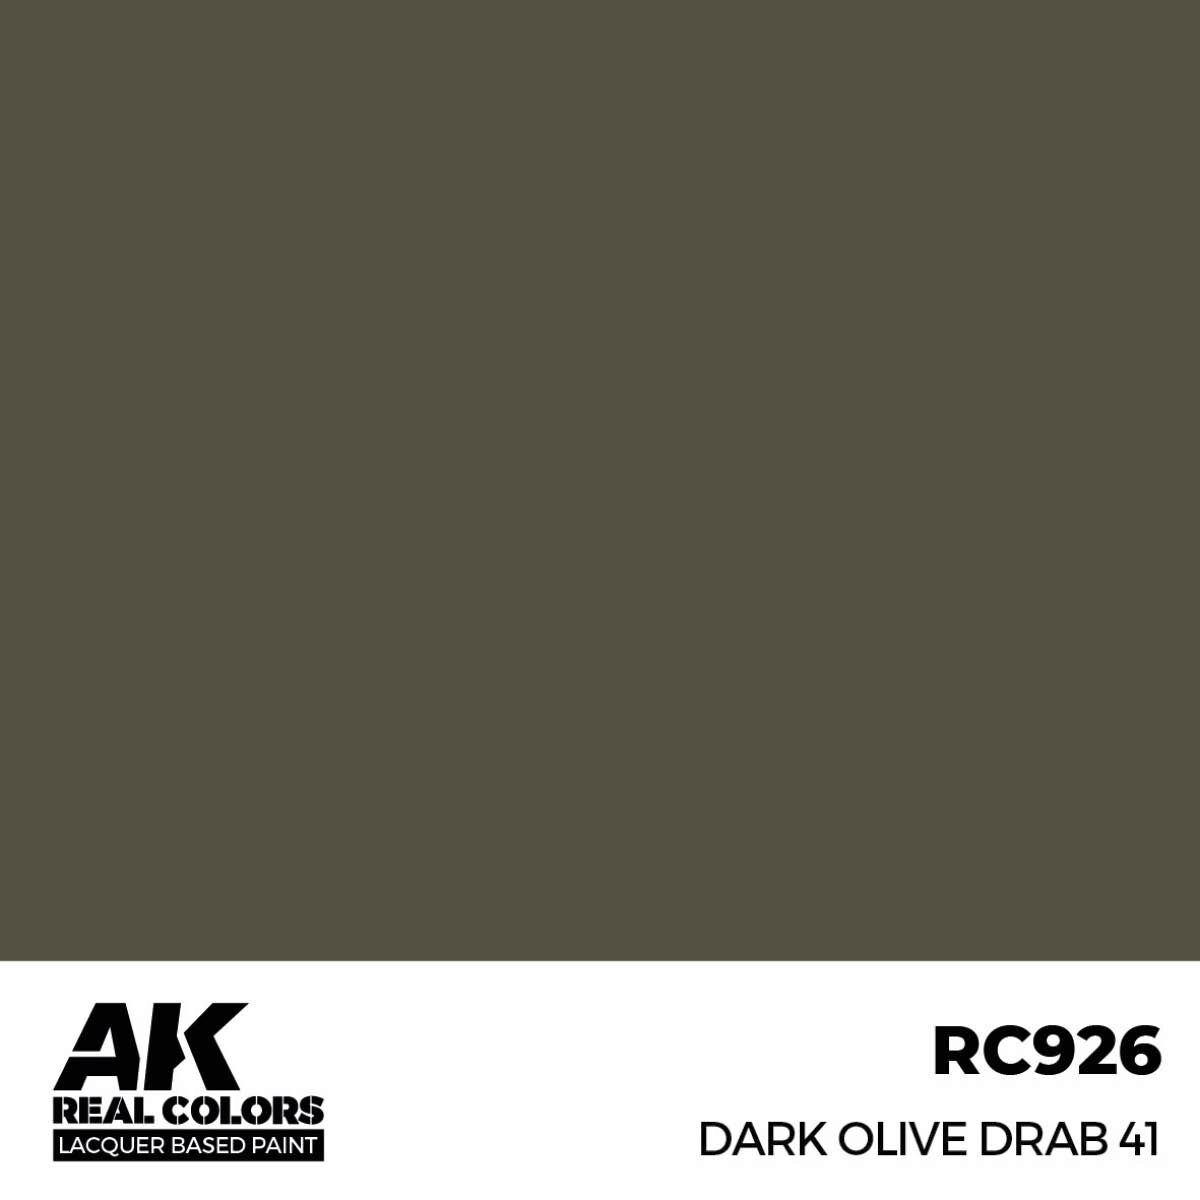 AK RC926 Real Colors Dark Olive Drab 41 17 ml.